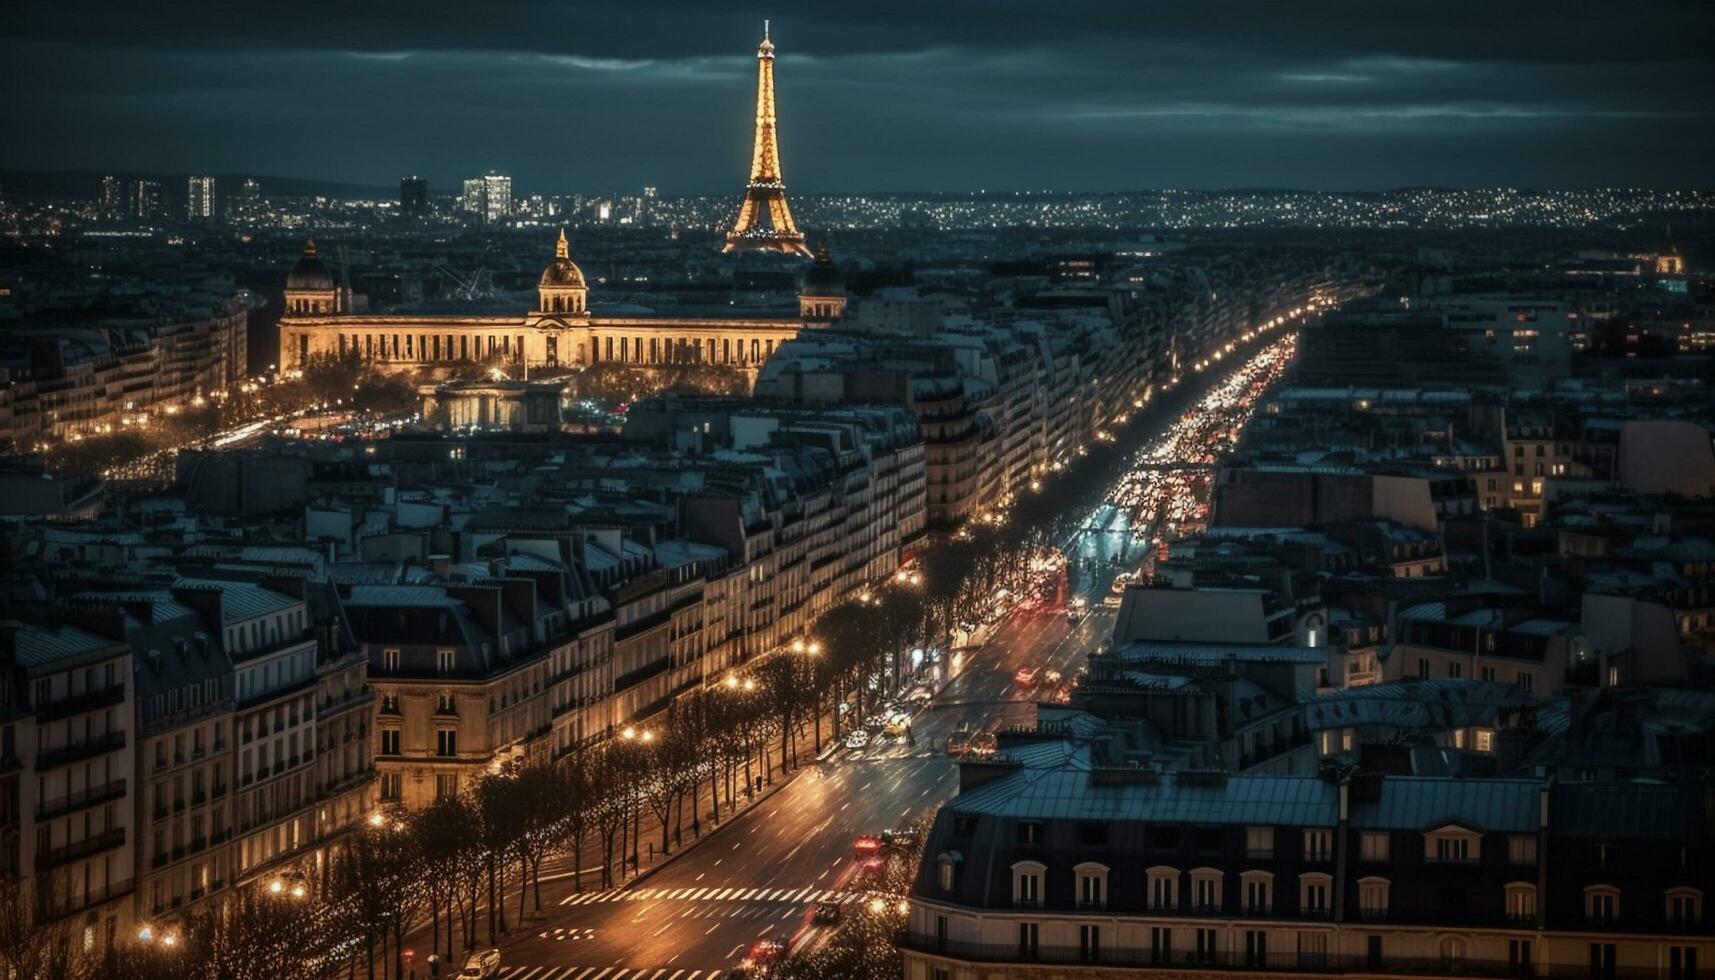 Illuminated city skyline, famous landmarks, bustling nightlife generated by AI photo